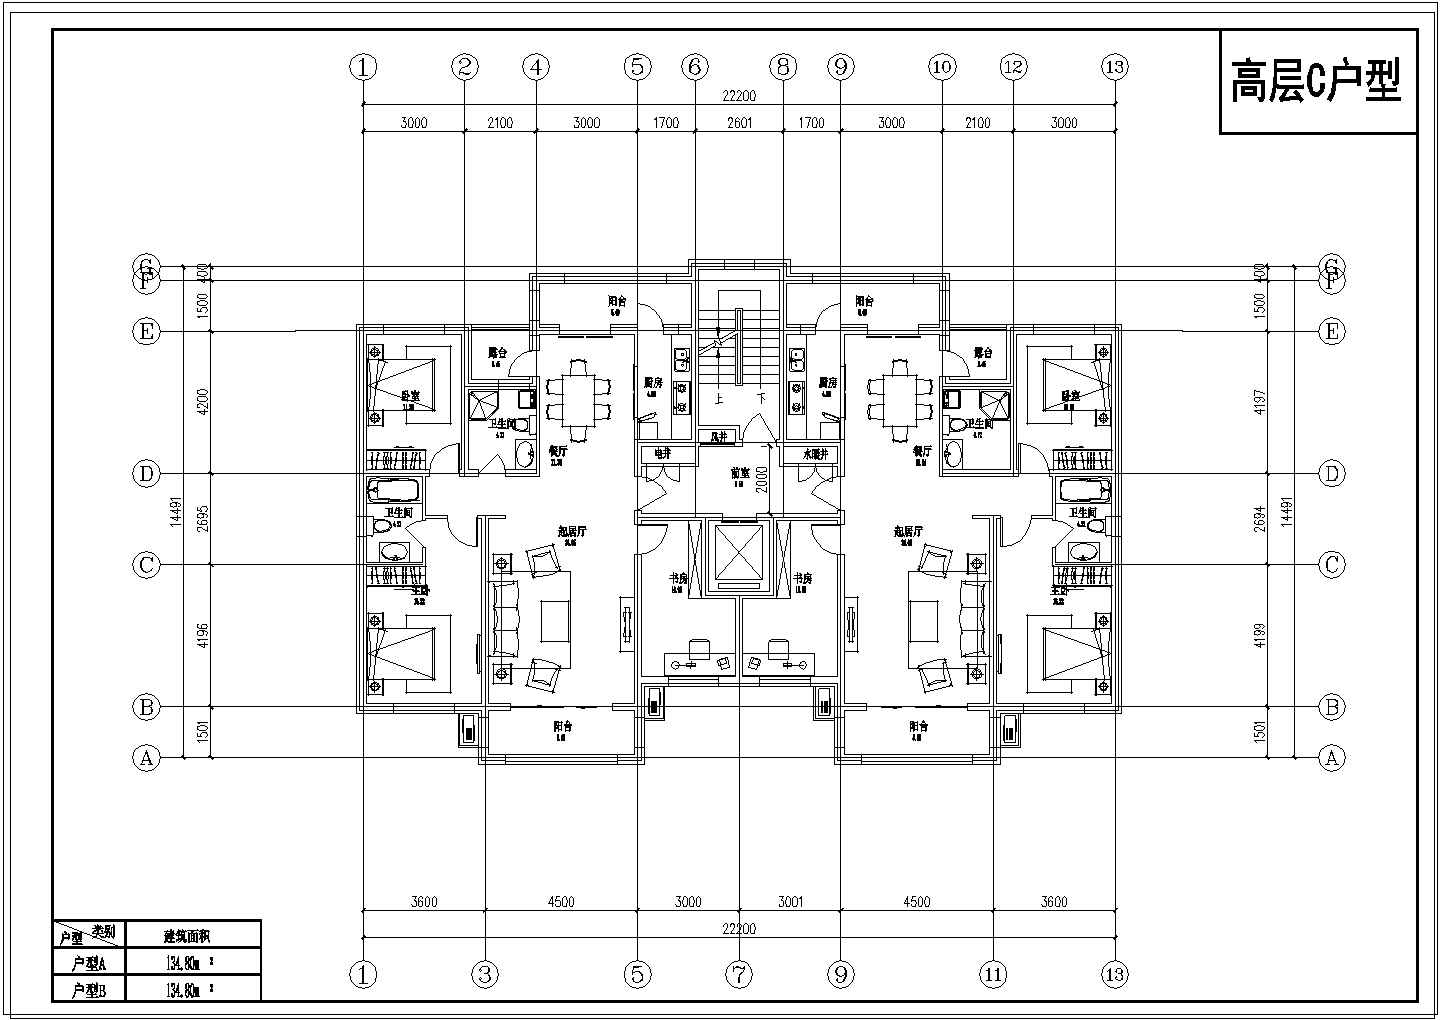 住宅户型规划图纸(洋房及高层)